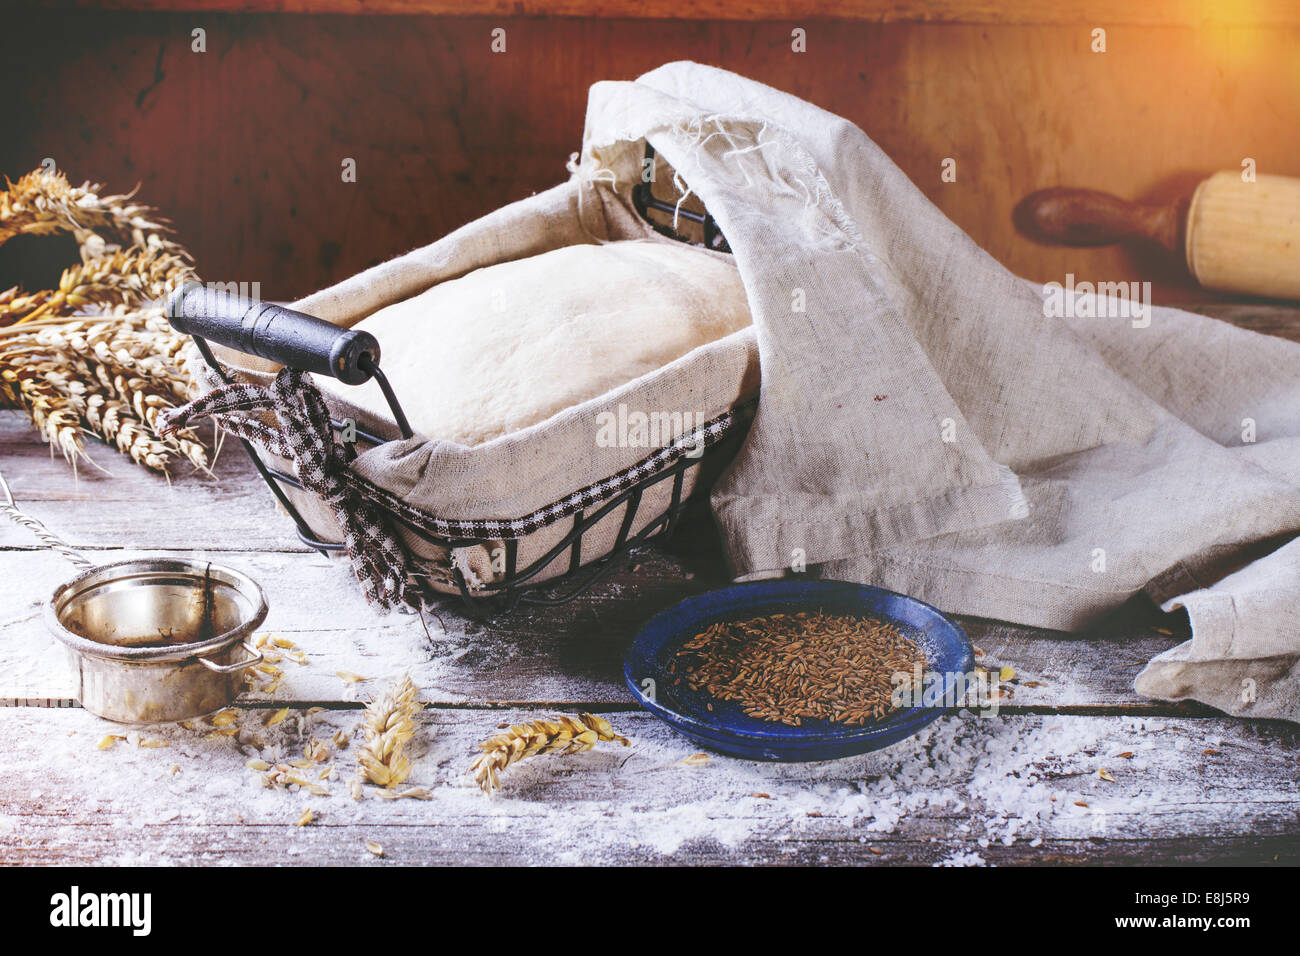 Brot backen. Teig in proofing Korb auf Holztisch mit Mehl, Kümmel und Weizen Ohren. In Retro-Filter-Effekt Stockfoto